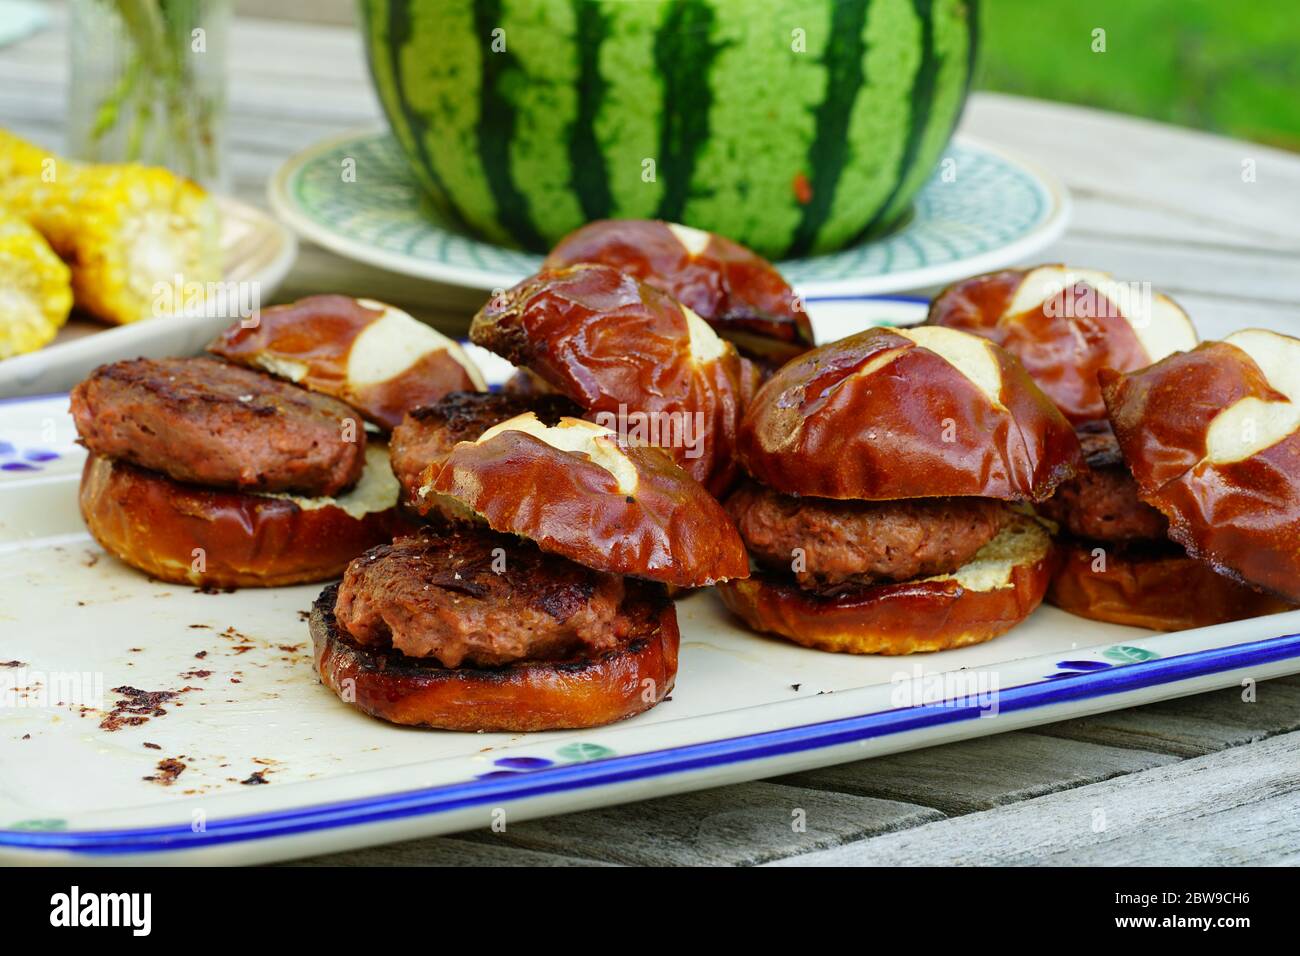 Hamburger di vegan alla griglia preparati con proteine a base di piante oltre la carne Foto Stock